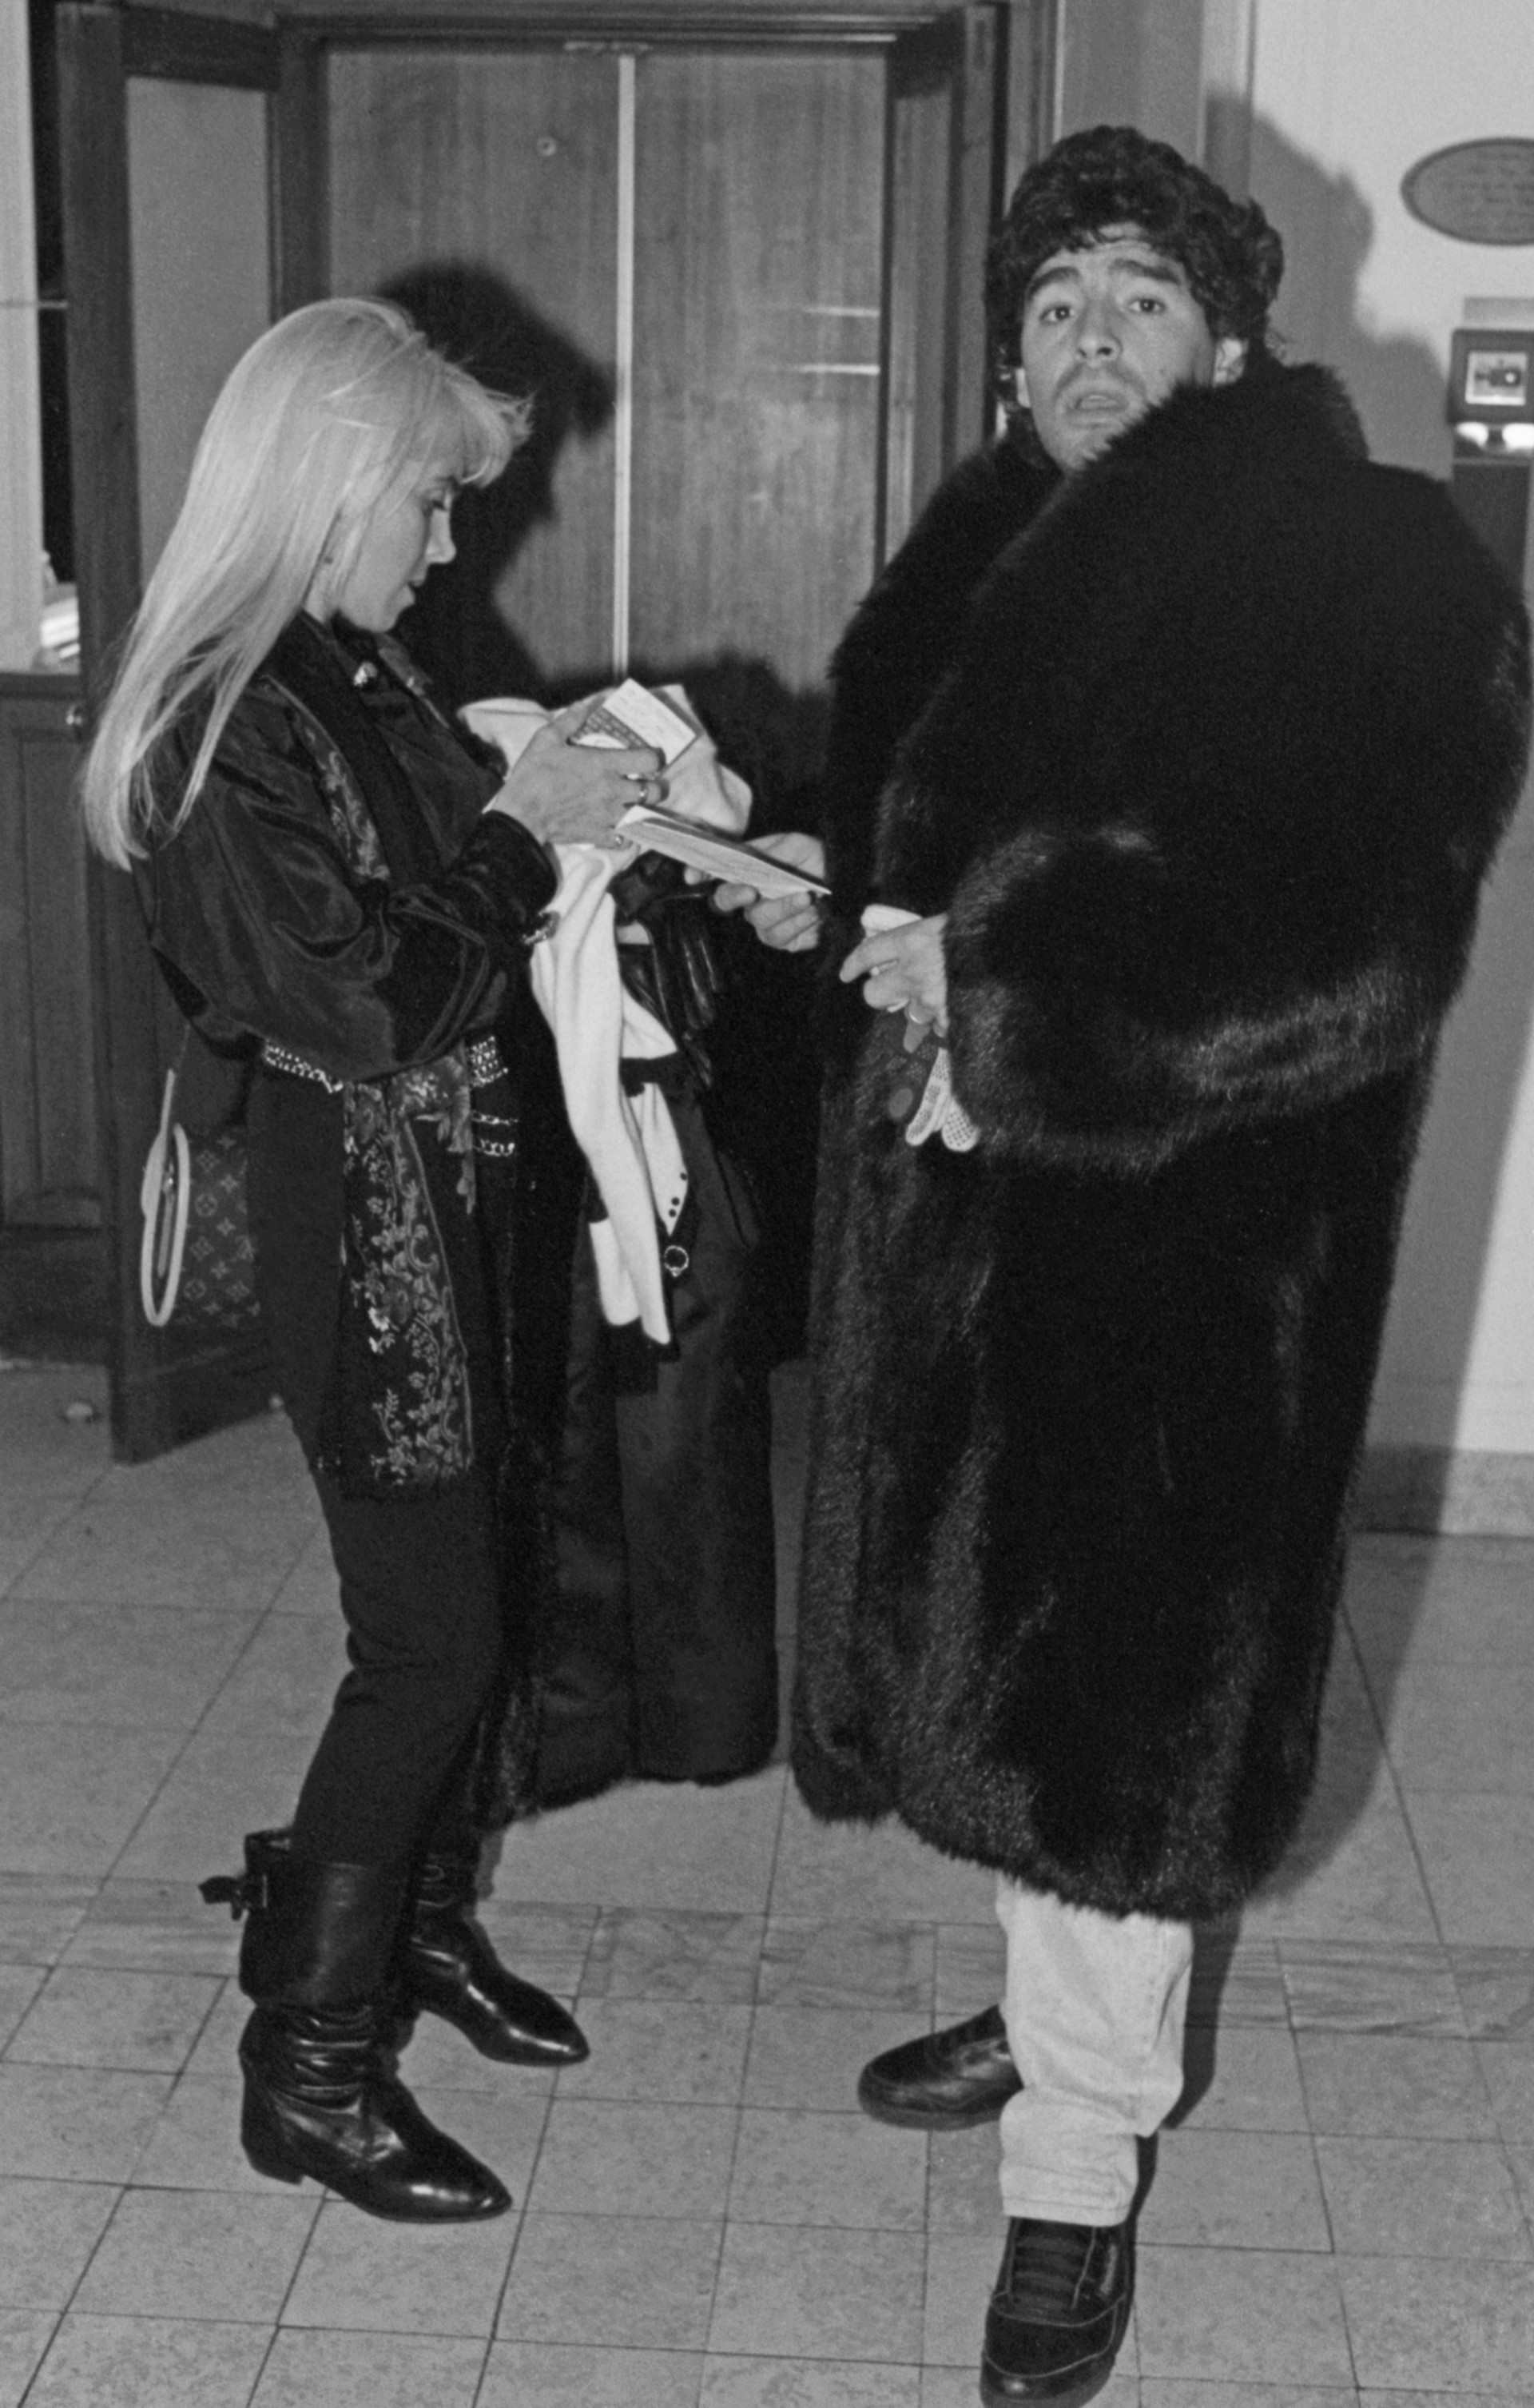 Maradona com casaco de pele no hall do Hotel Berlim, em Moscou, acompanhado da mulher Claudia Villafañe

